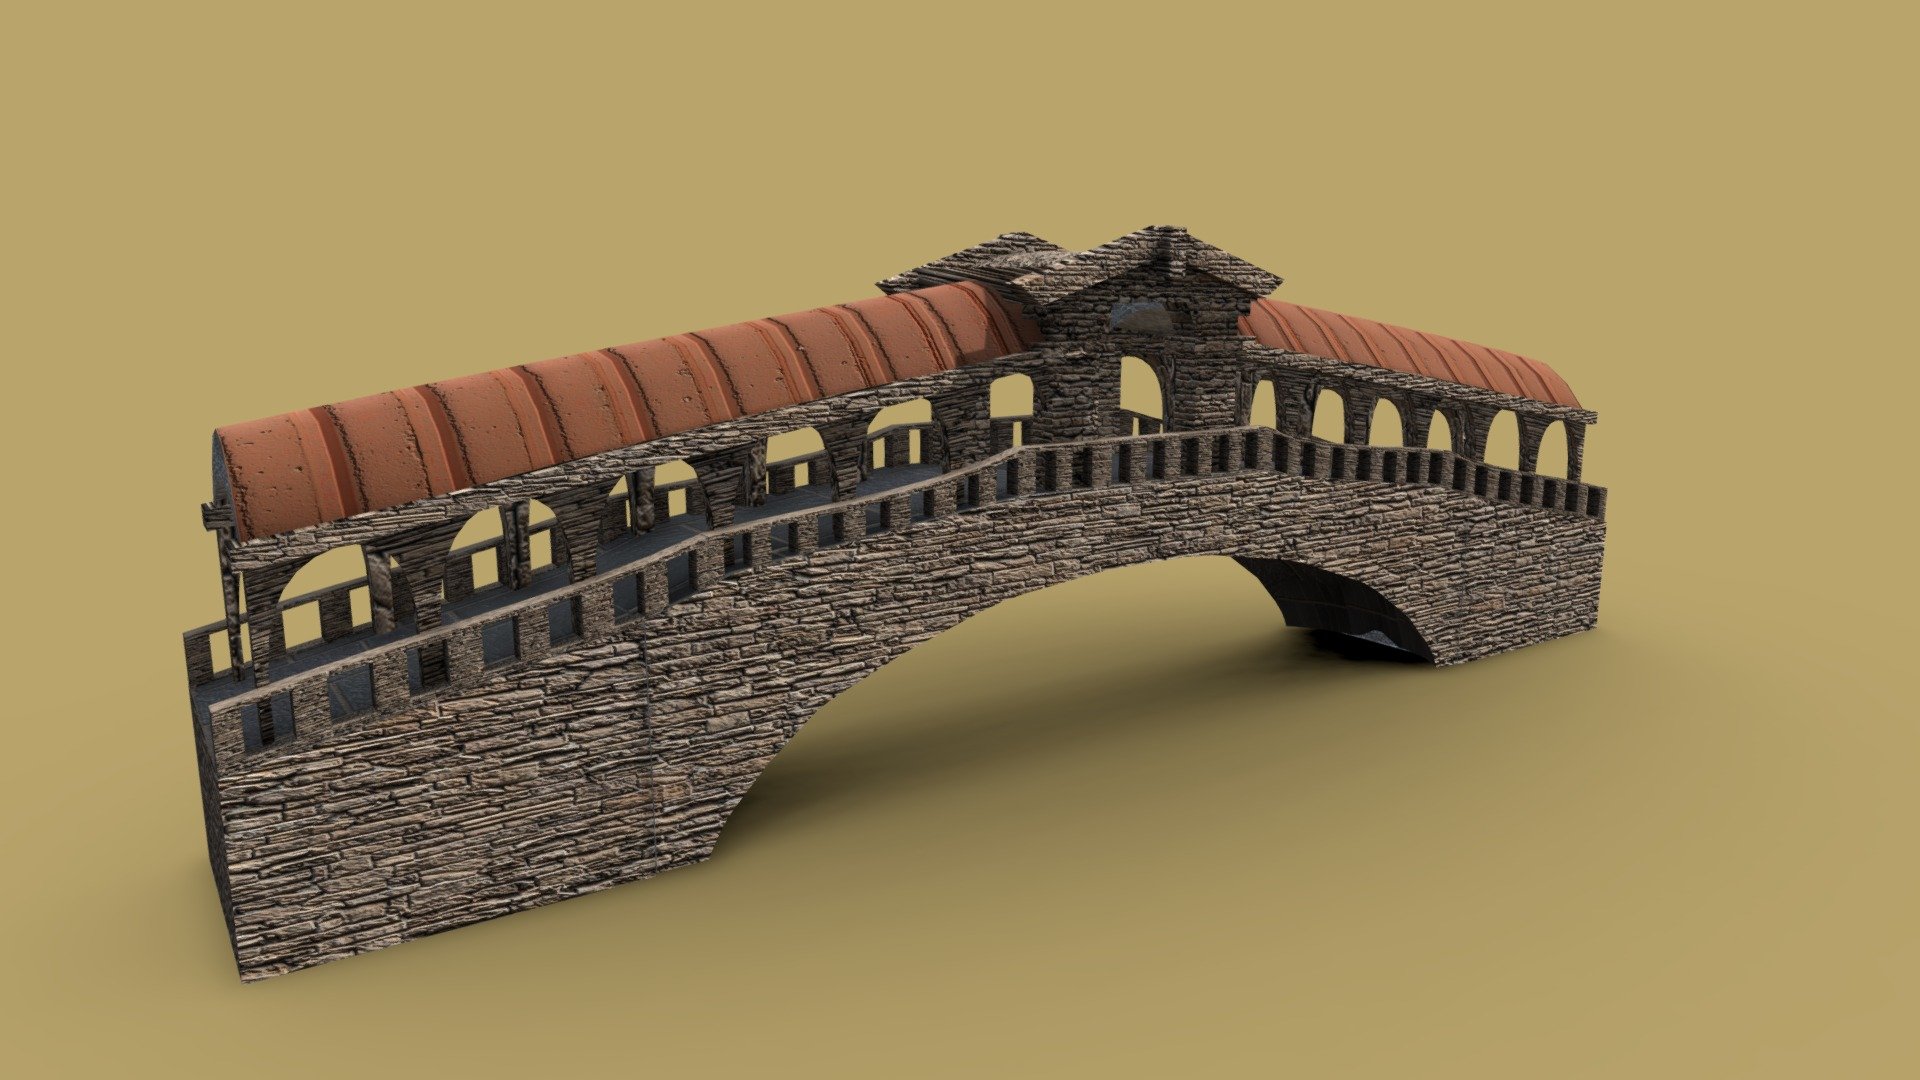 งานกลุ่ม วิชา 3 มิติ 1 - Rialto Bridge - 3D model by N0M4DXII (@n0madxii) 3d model